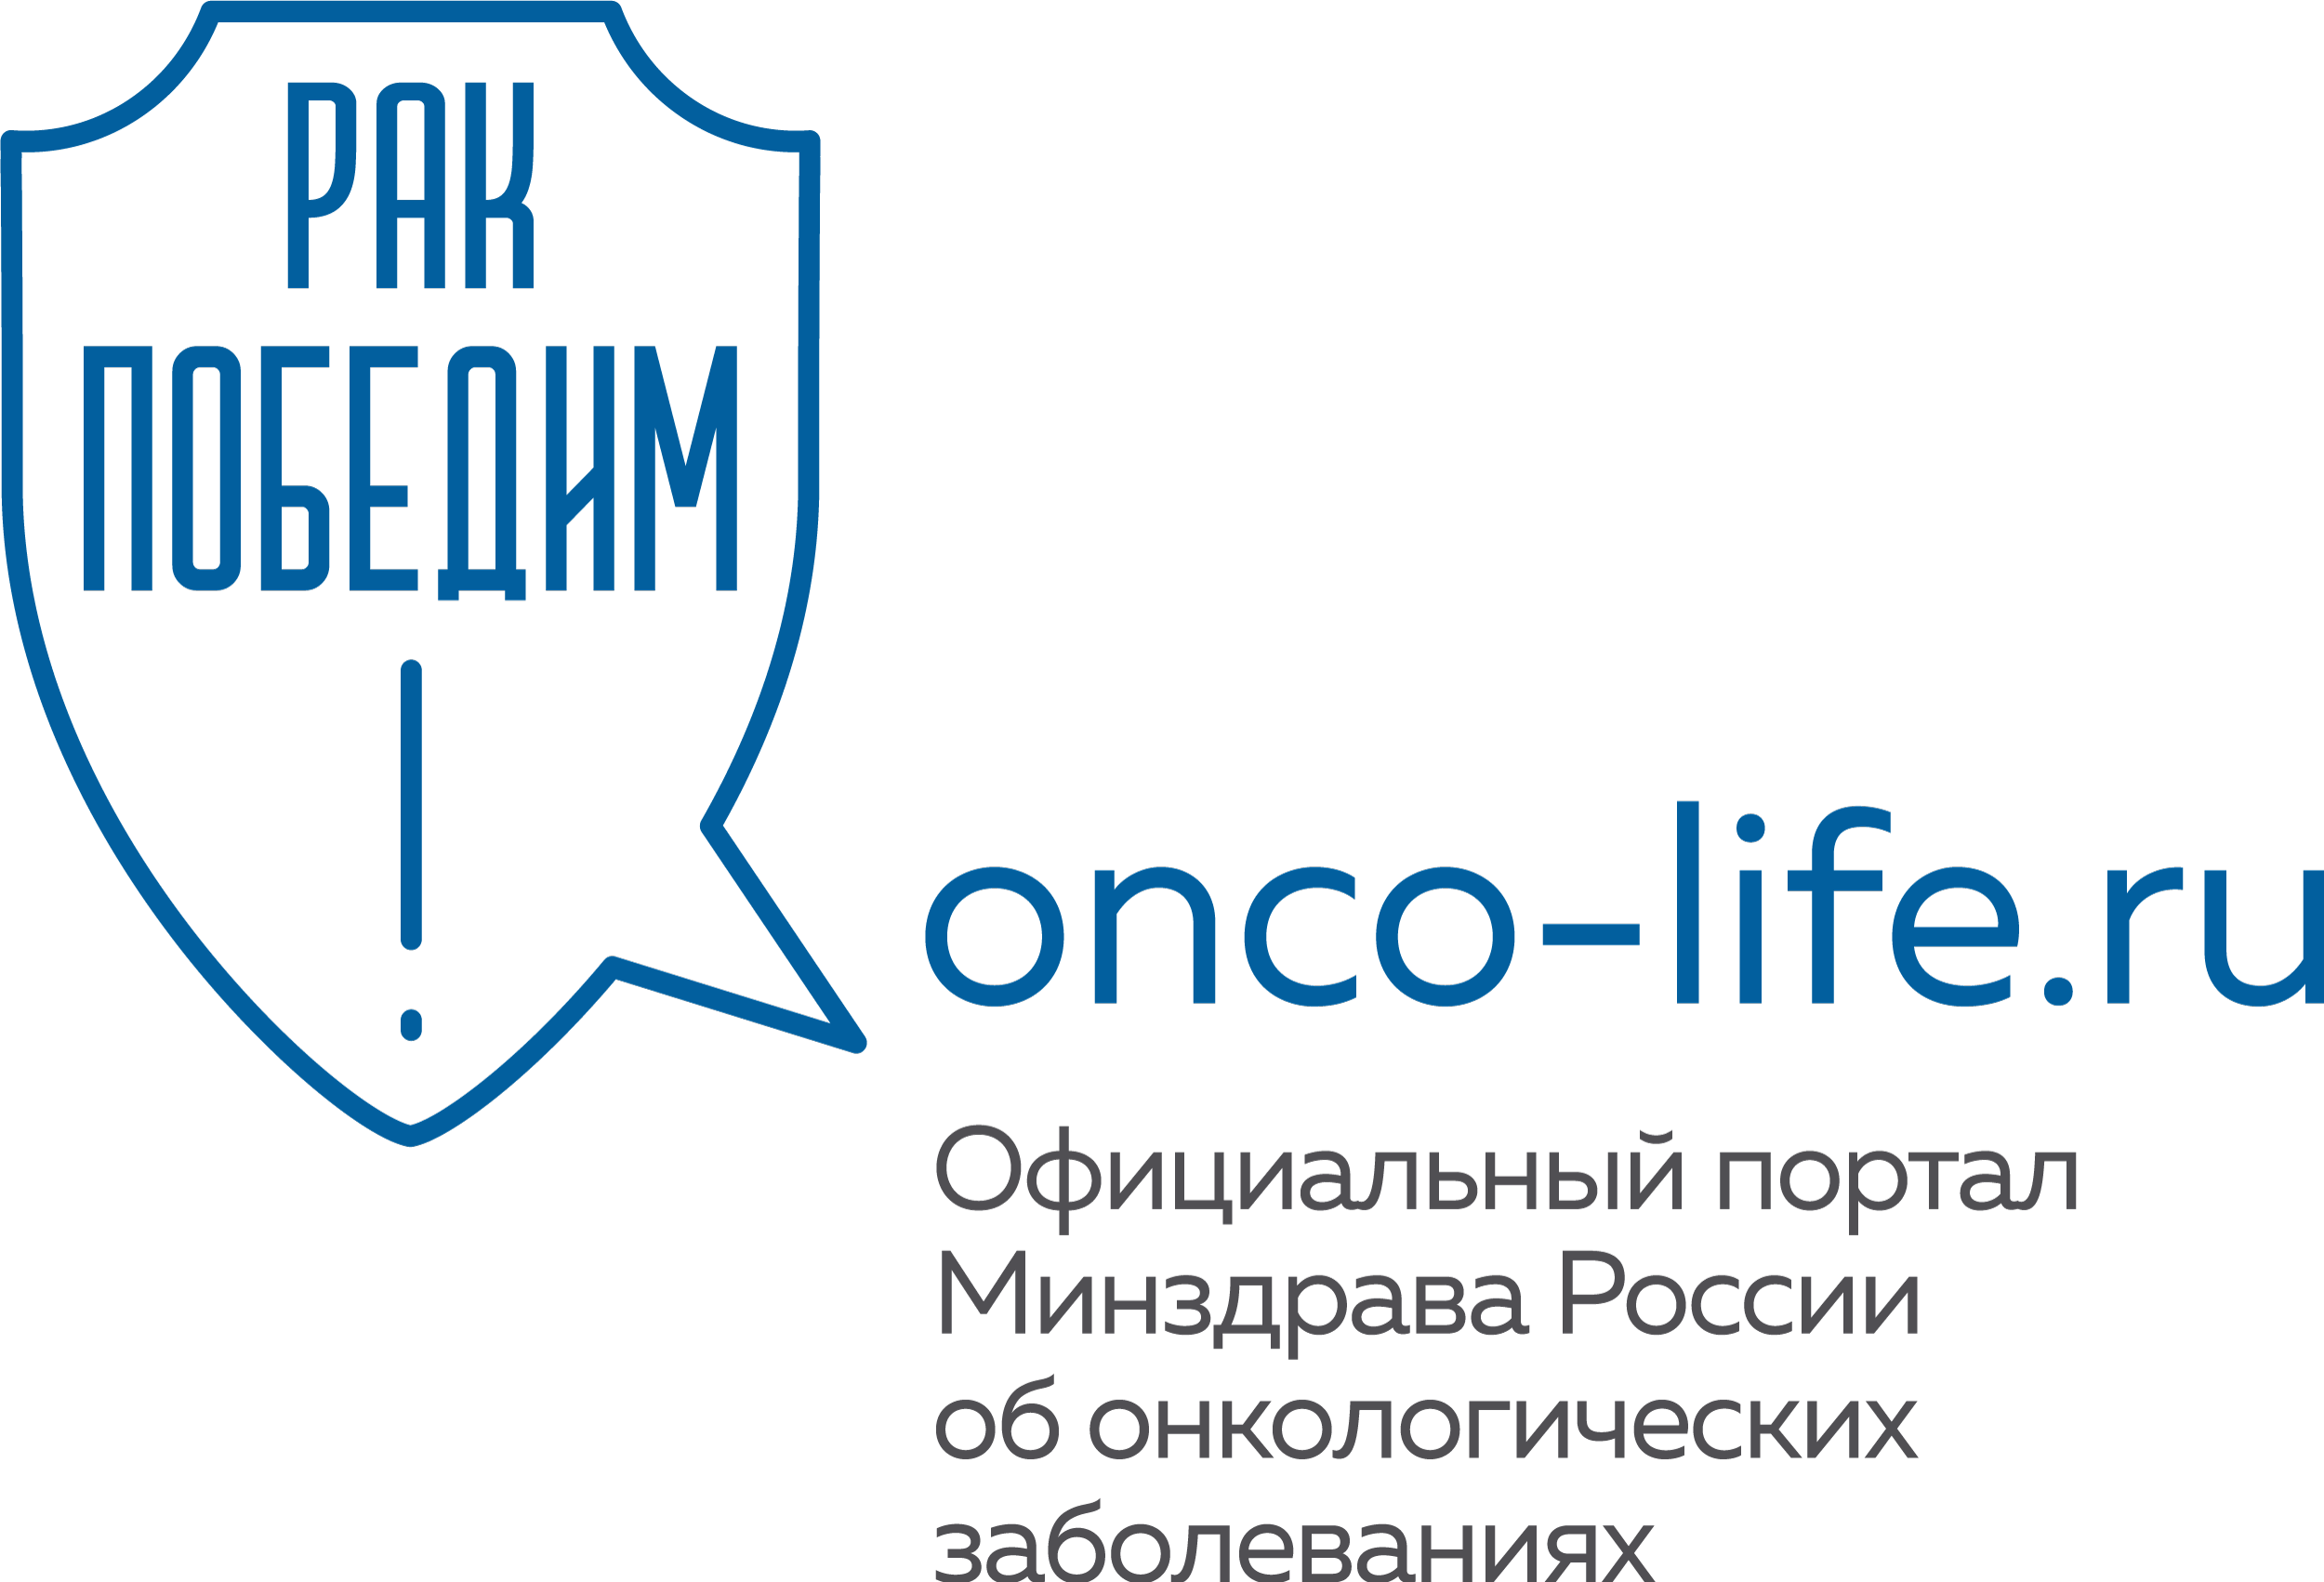 onco-life logo full blue